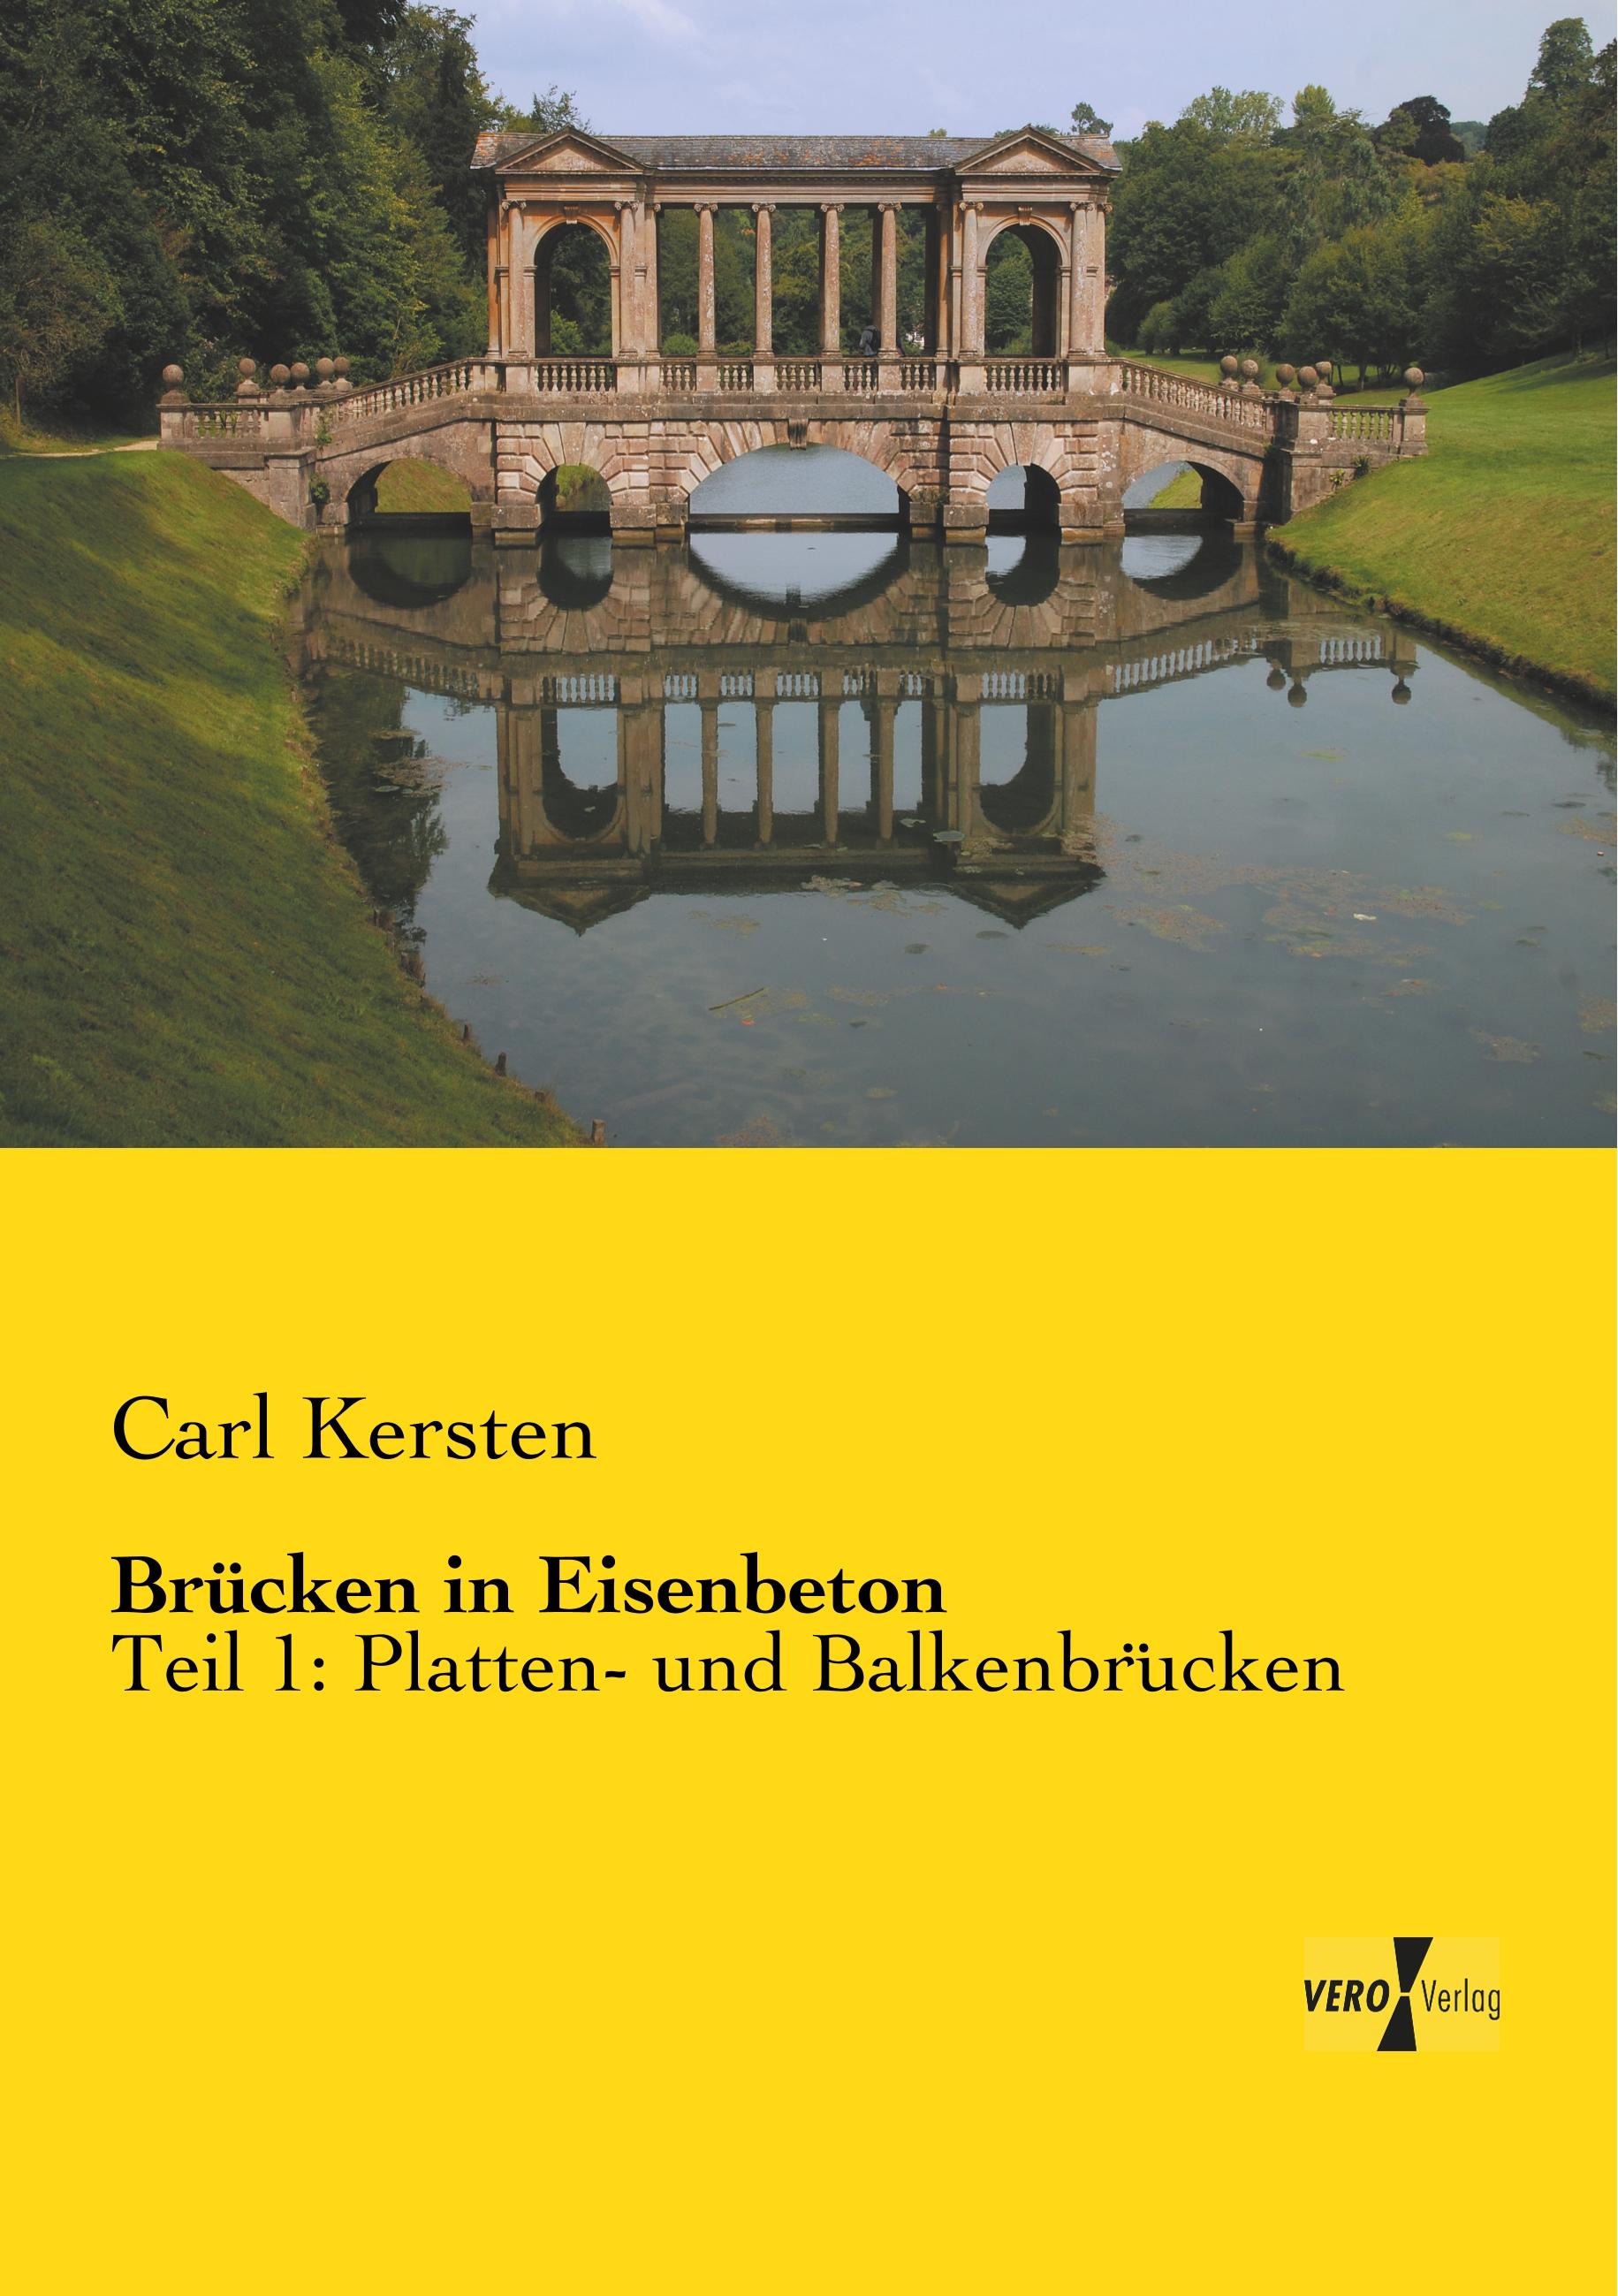 Bruecken in Eisenbeton - Kersten, Carl